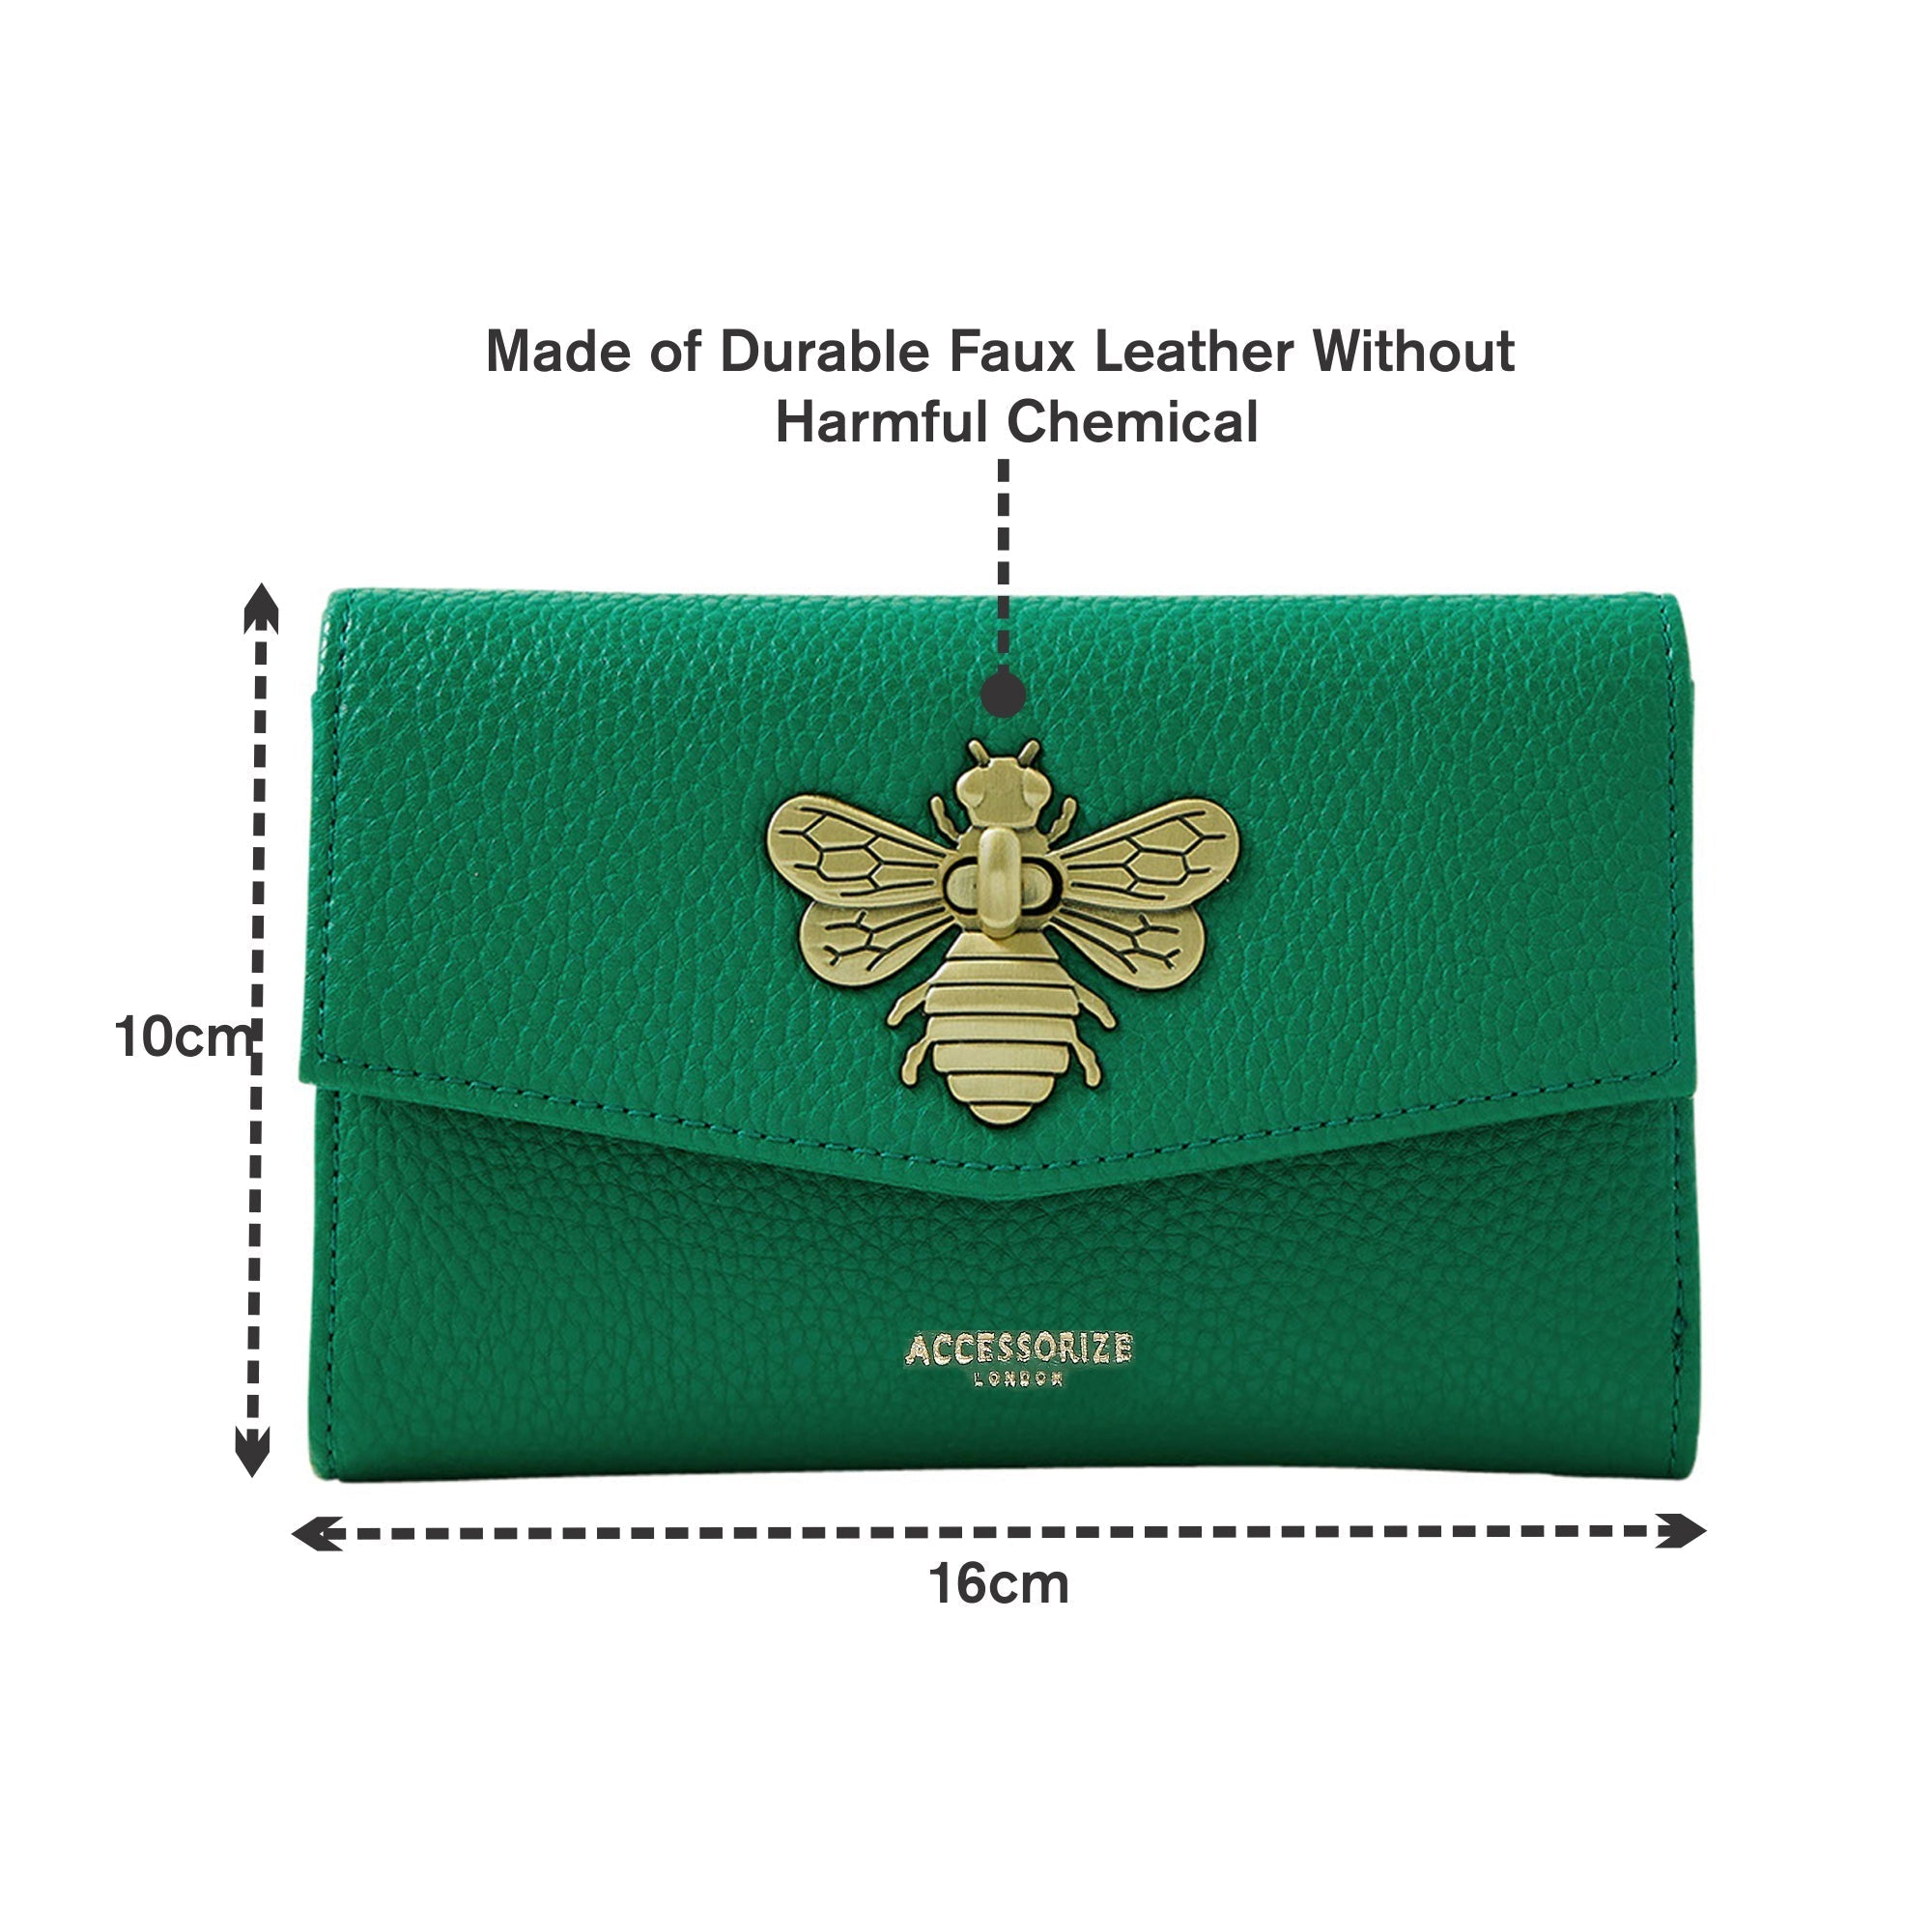 Accessorize London Women's Faux Leather Britney Bee Wallet - Green